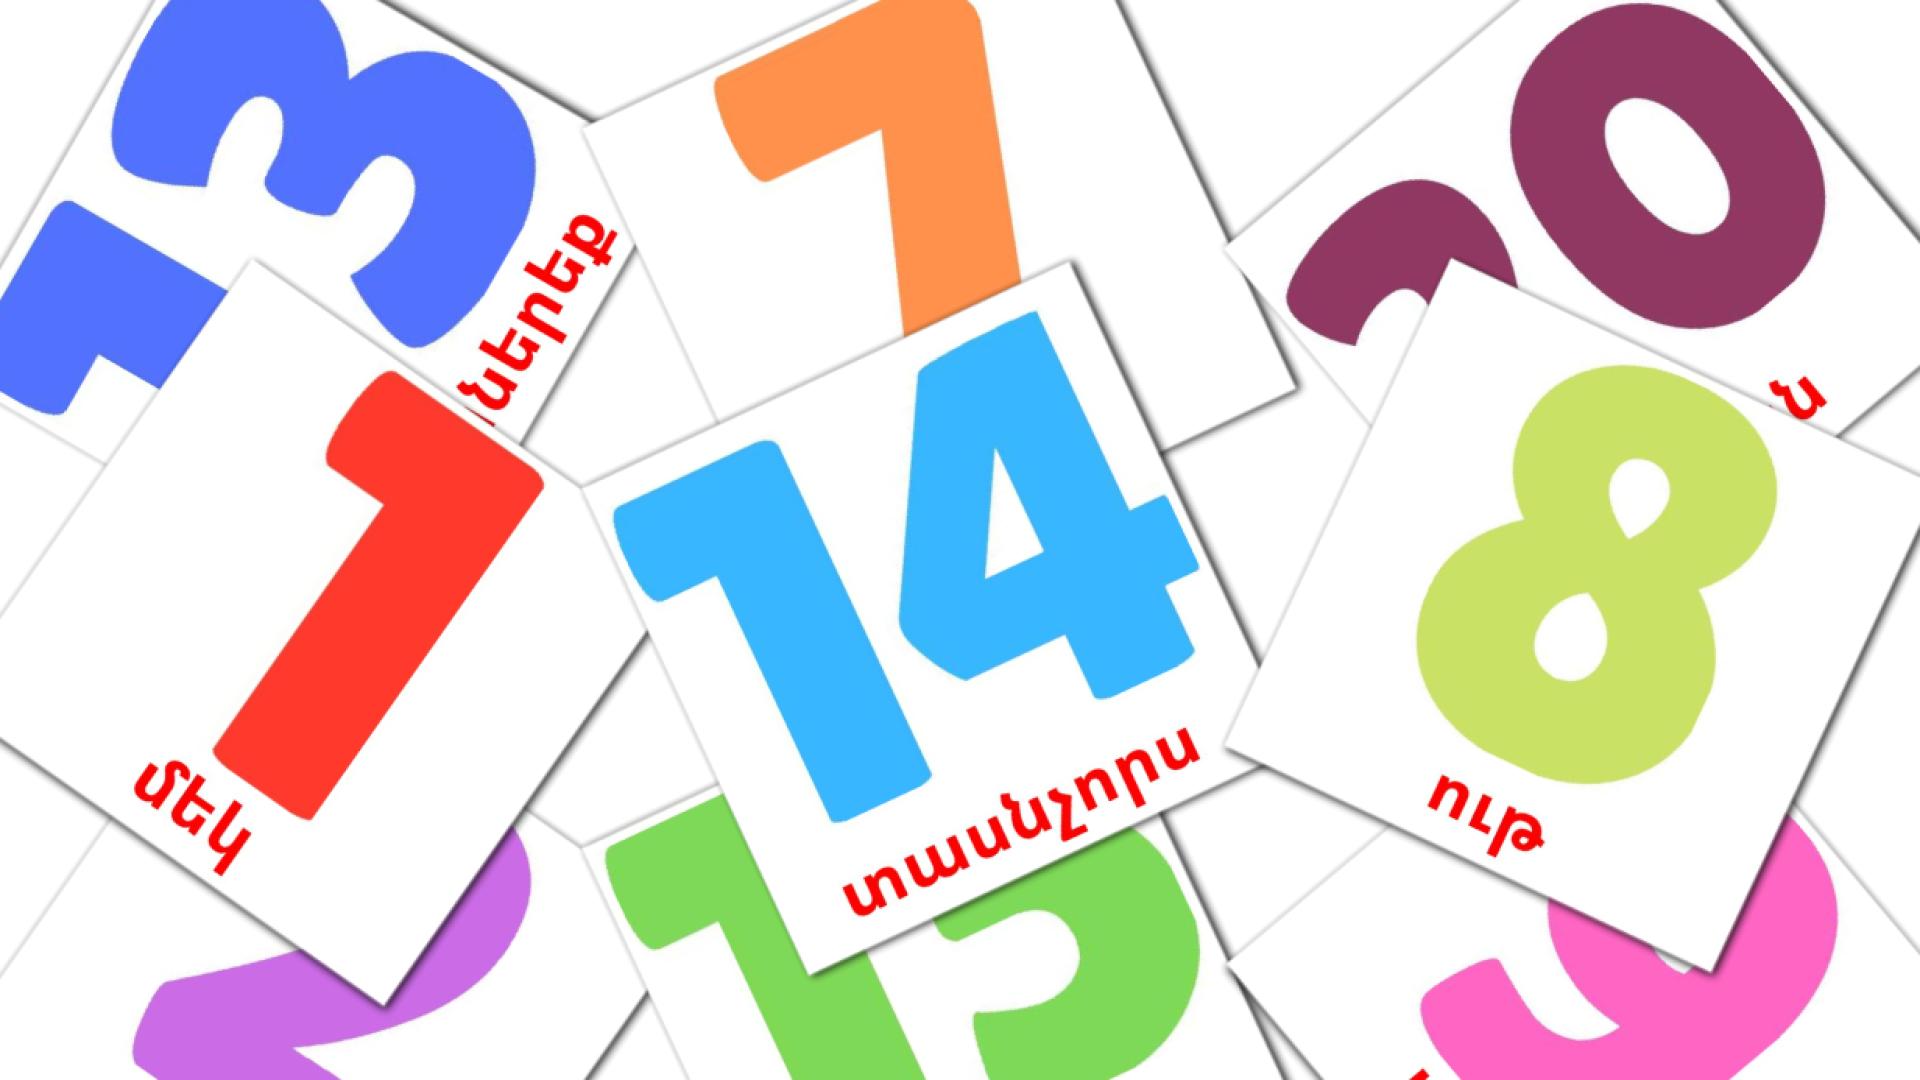 Numeri (1-20) - Schede di vocabolario armeno